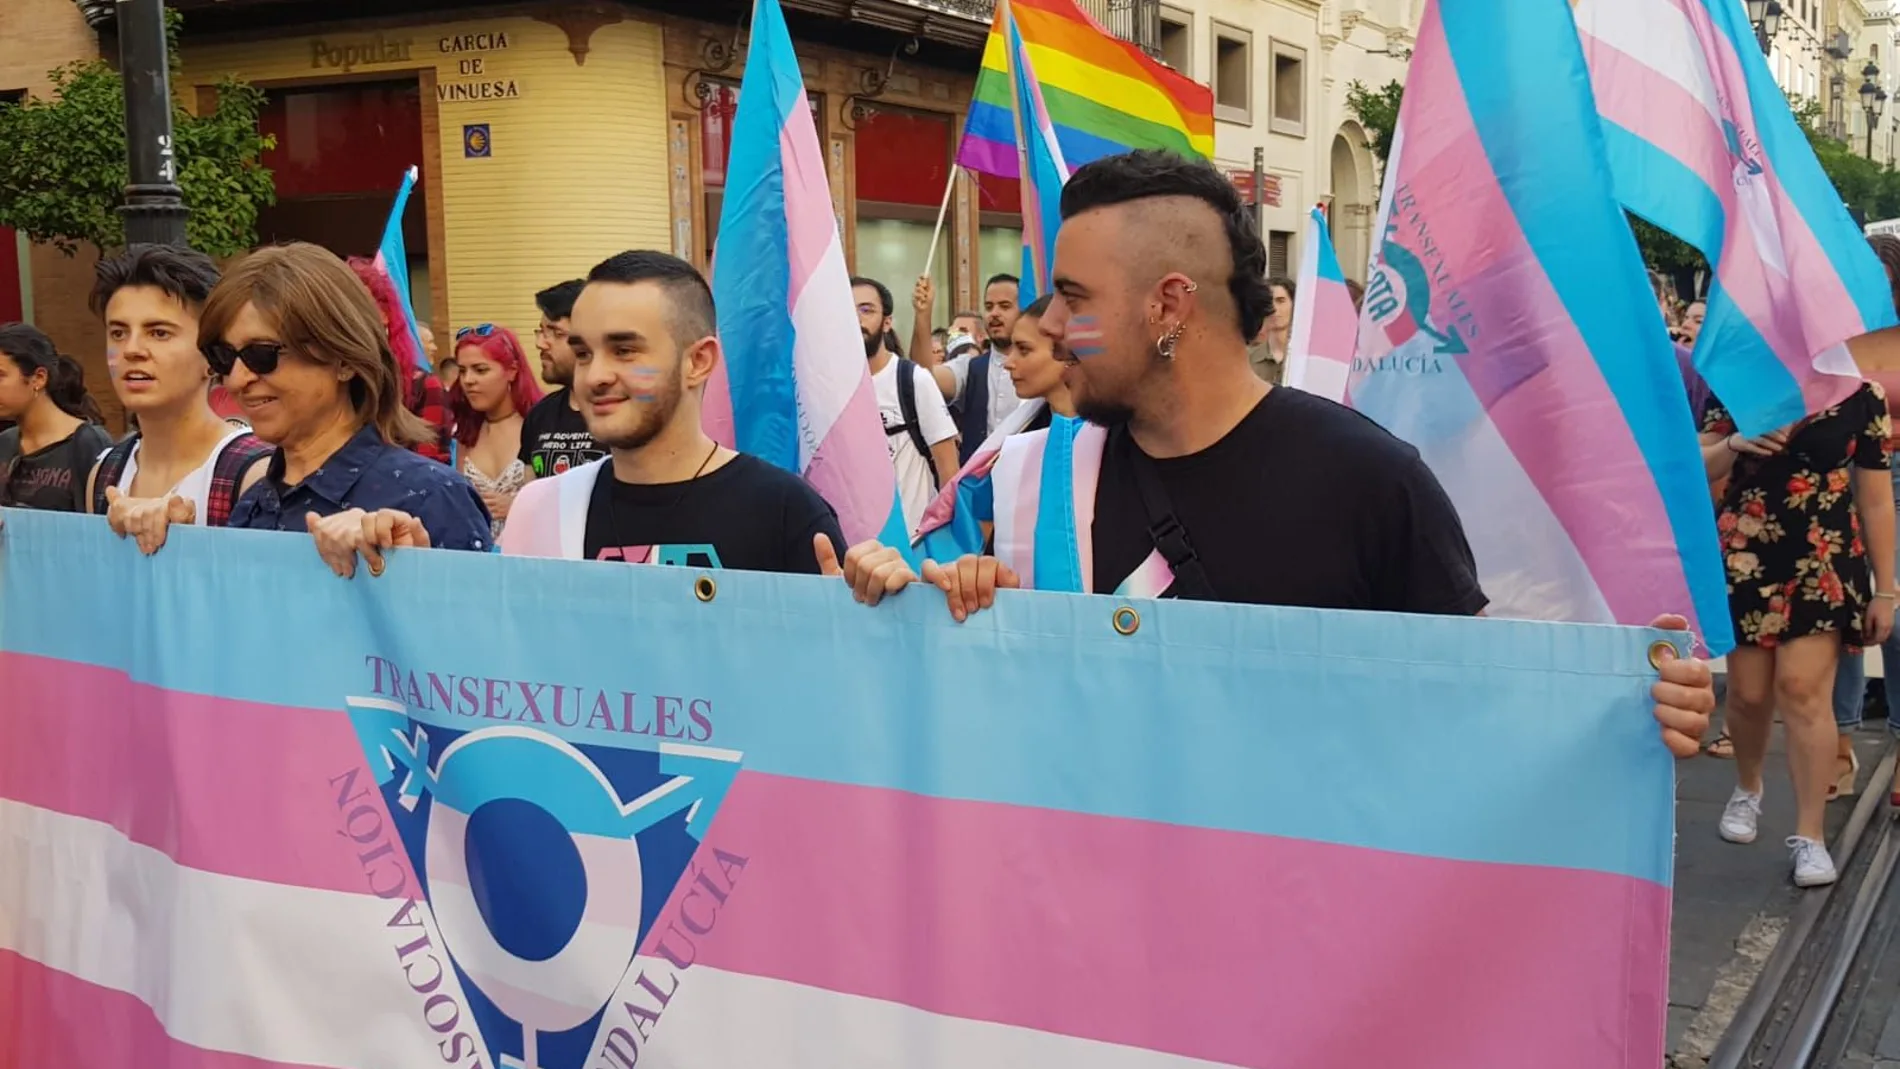 Dos de los participantes en el campamento, Mario Rodríguez y Adri Luna, durante una manifestación por los derechos de los transexuales/ Foto: La Razón